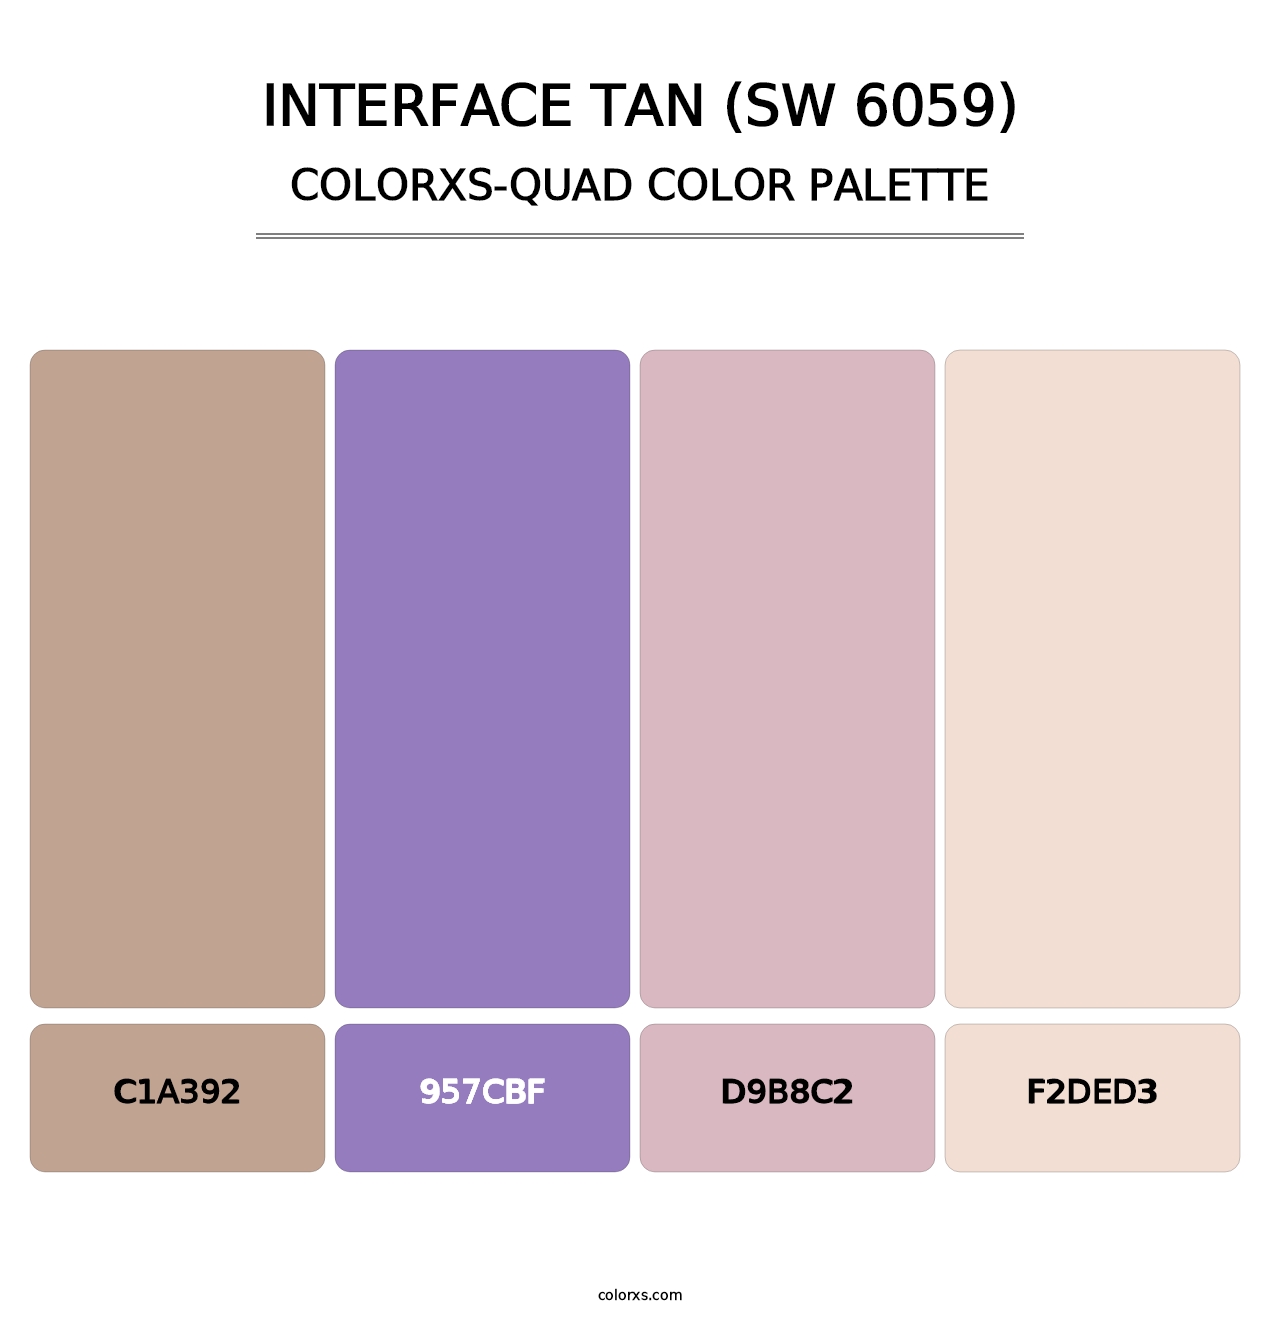 Interface Tan (SW 6059) - Colorxs Quad Palette